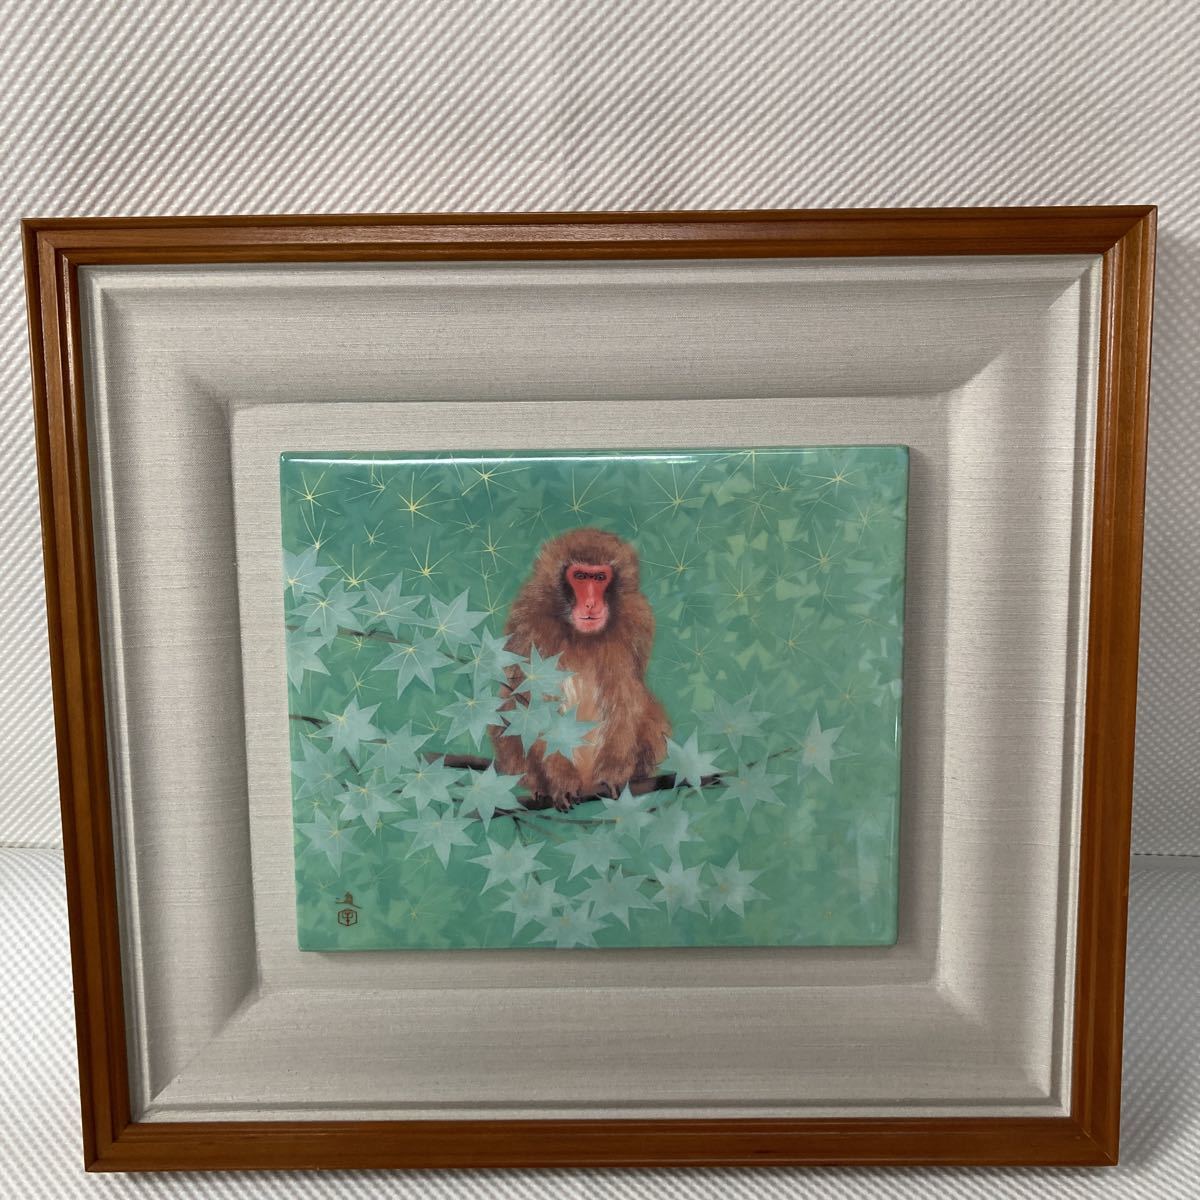 ماكي سوسومو زودياك القرد ماهاتا الفخار كوياما فرن إطار الصورة لوحة السيراميك اللوحة اللوحة الفنون الجميلة اللوحة اليابانية الحيوان القرد, عمل فني, تلوين, آحرون